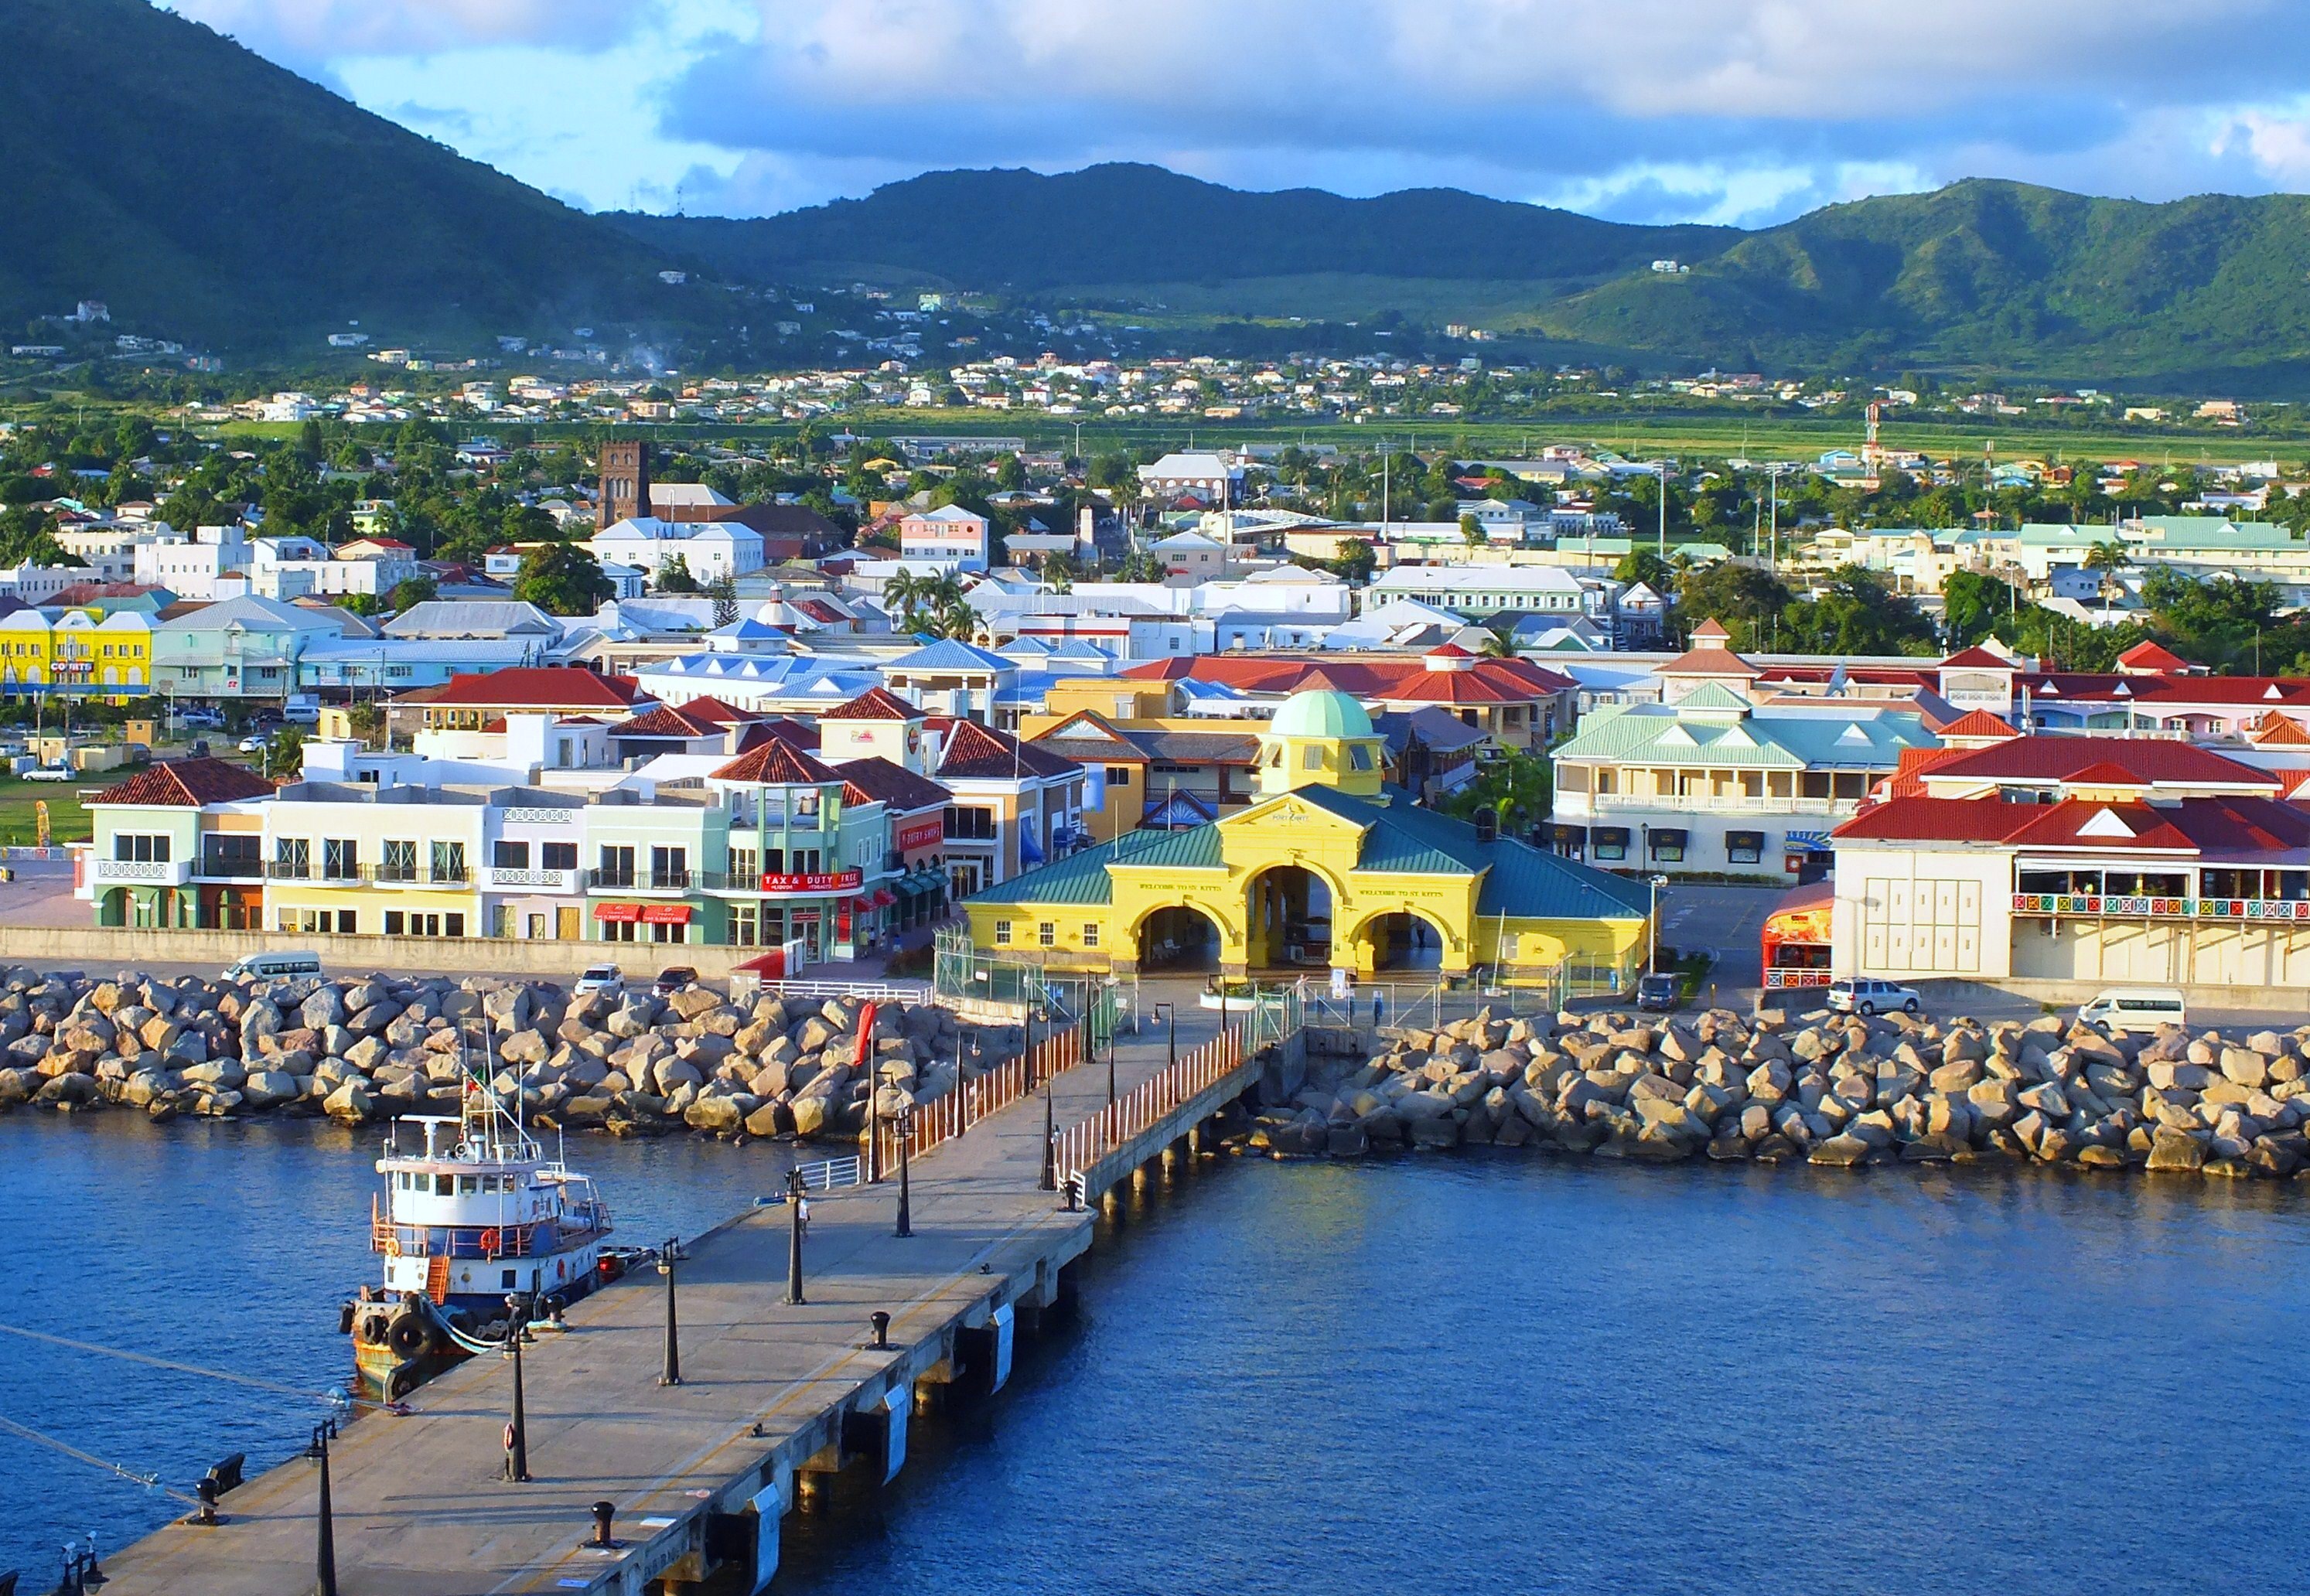 Obtención de ciudadanía en Saint Kitts & Nevis mediante contribuciones al “Hurricane Relief Fund”